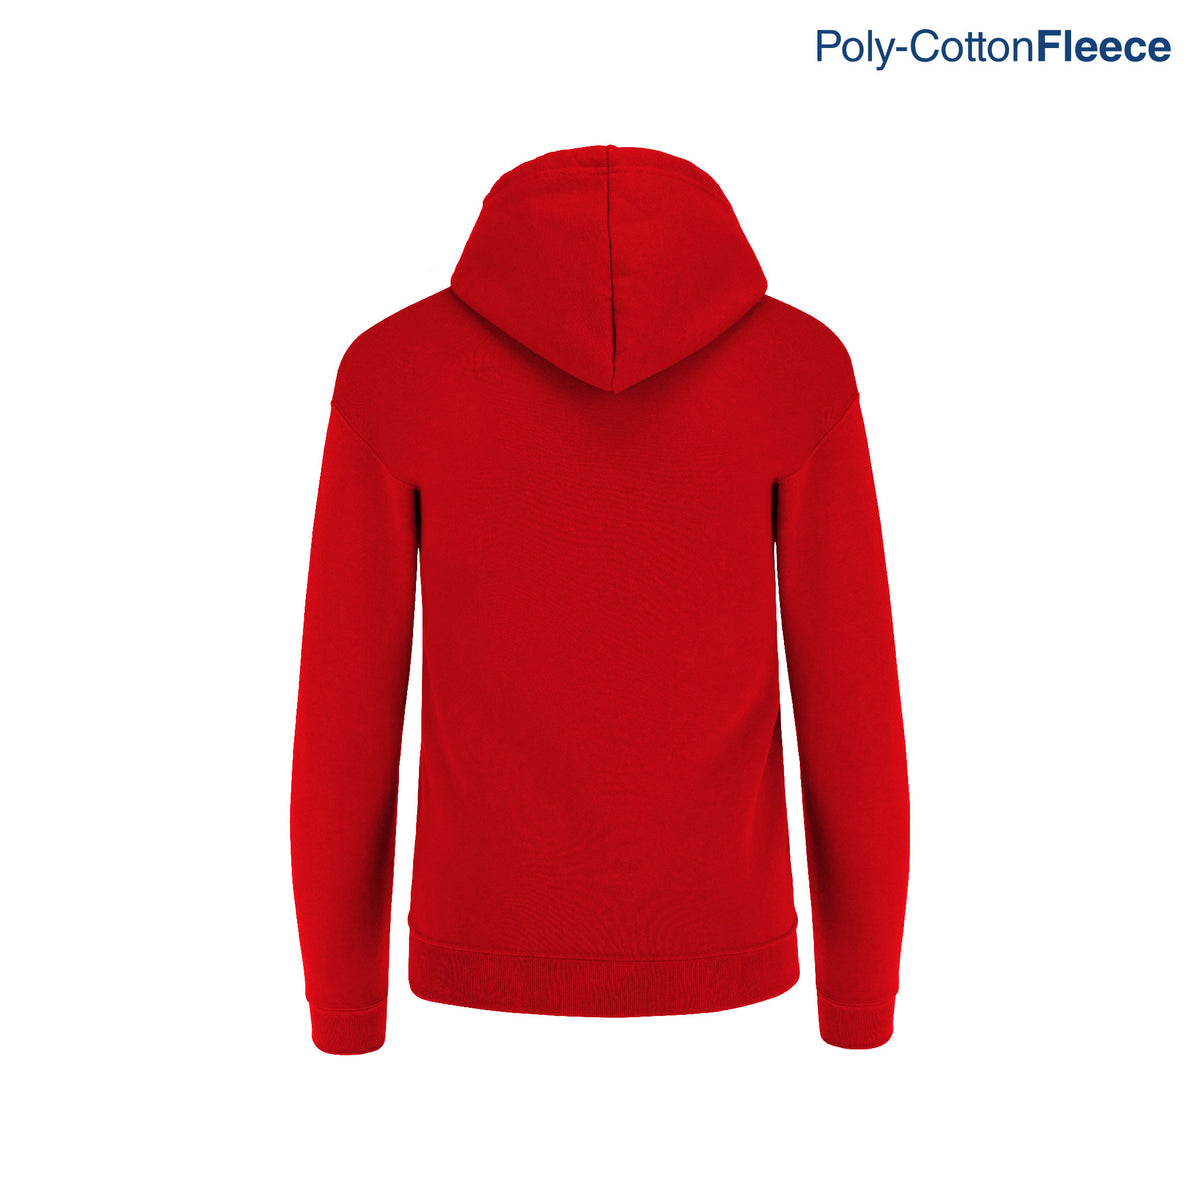 Adult’s Unisex Hooded Sweatshirt With Kangaroo Pocket (Red) – Yazbek ...